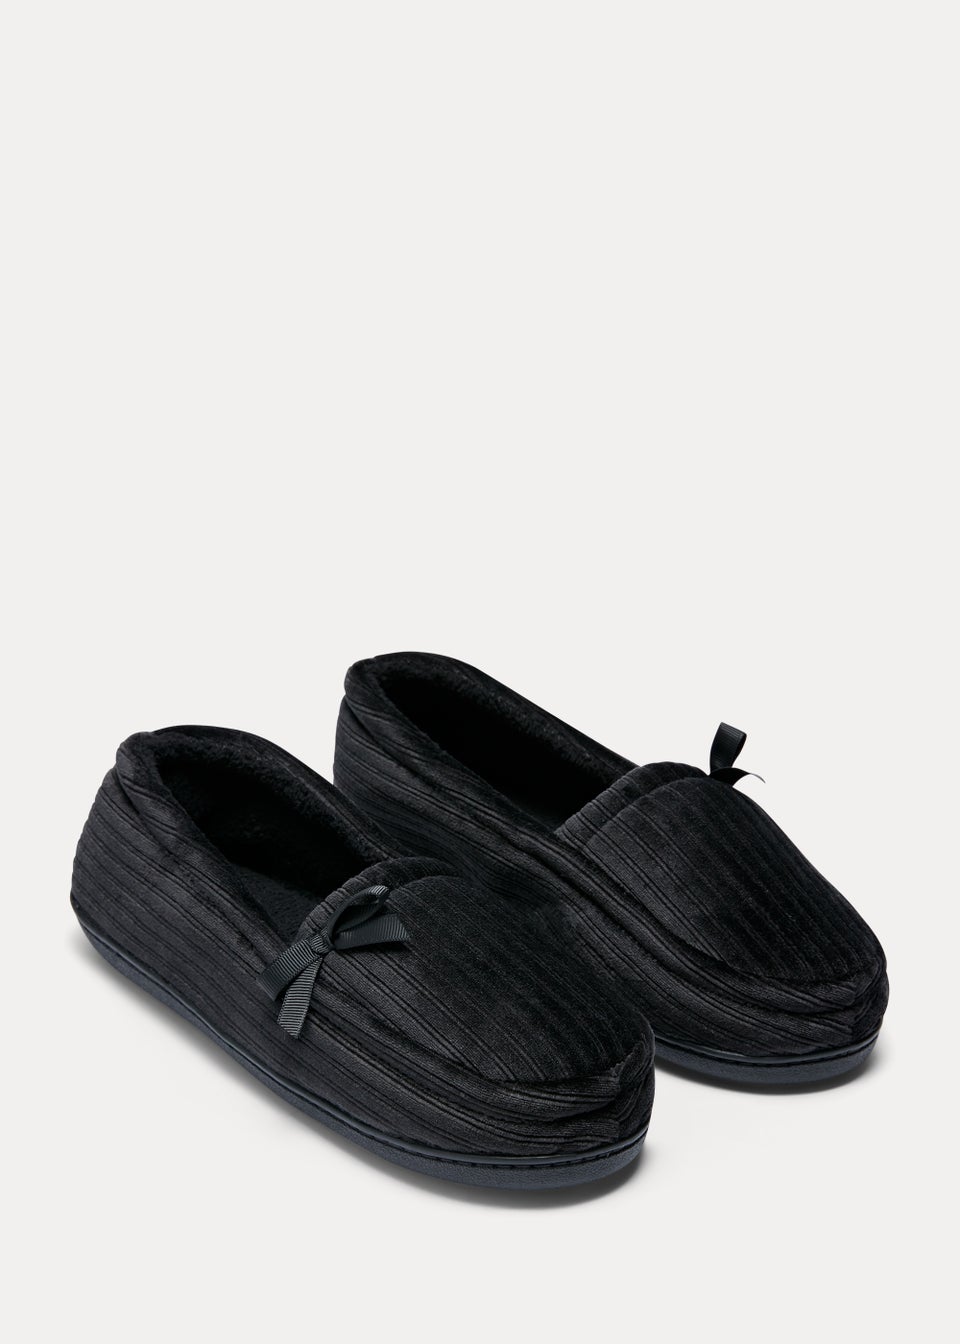 Black Velour Slippers